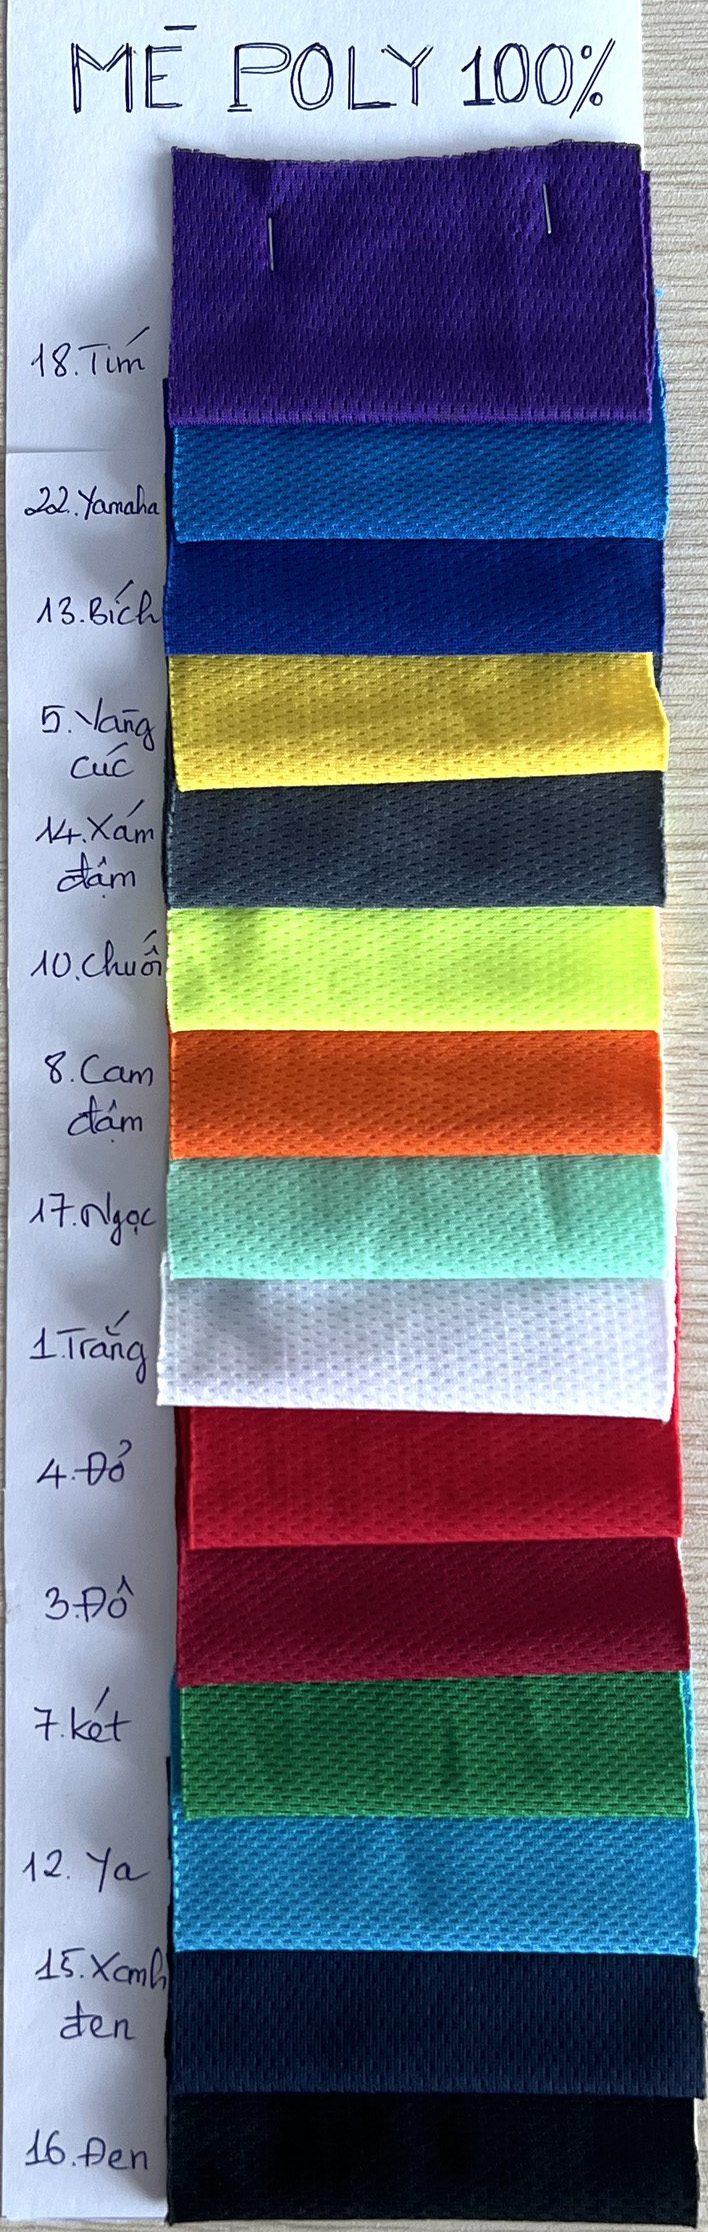 Bảng màu áo thun đồng phục tại công ty BiCi